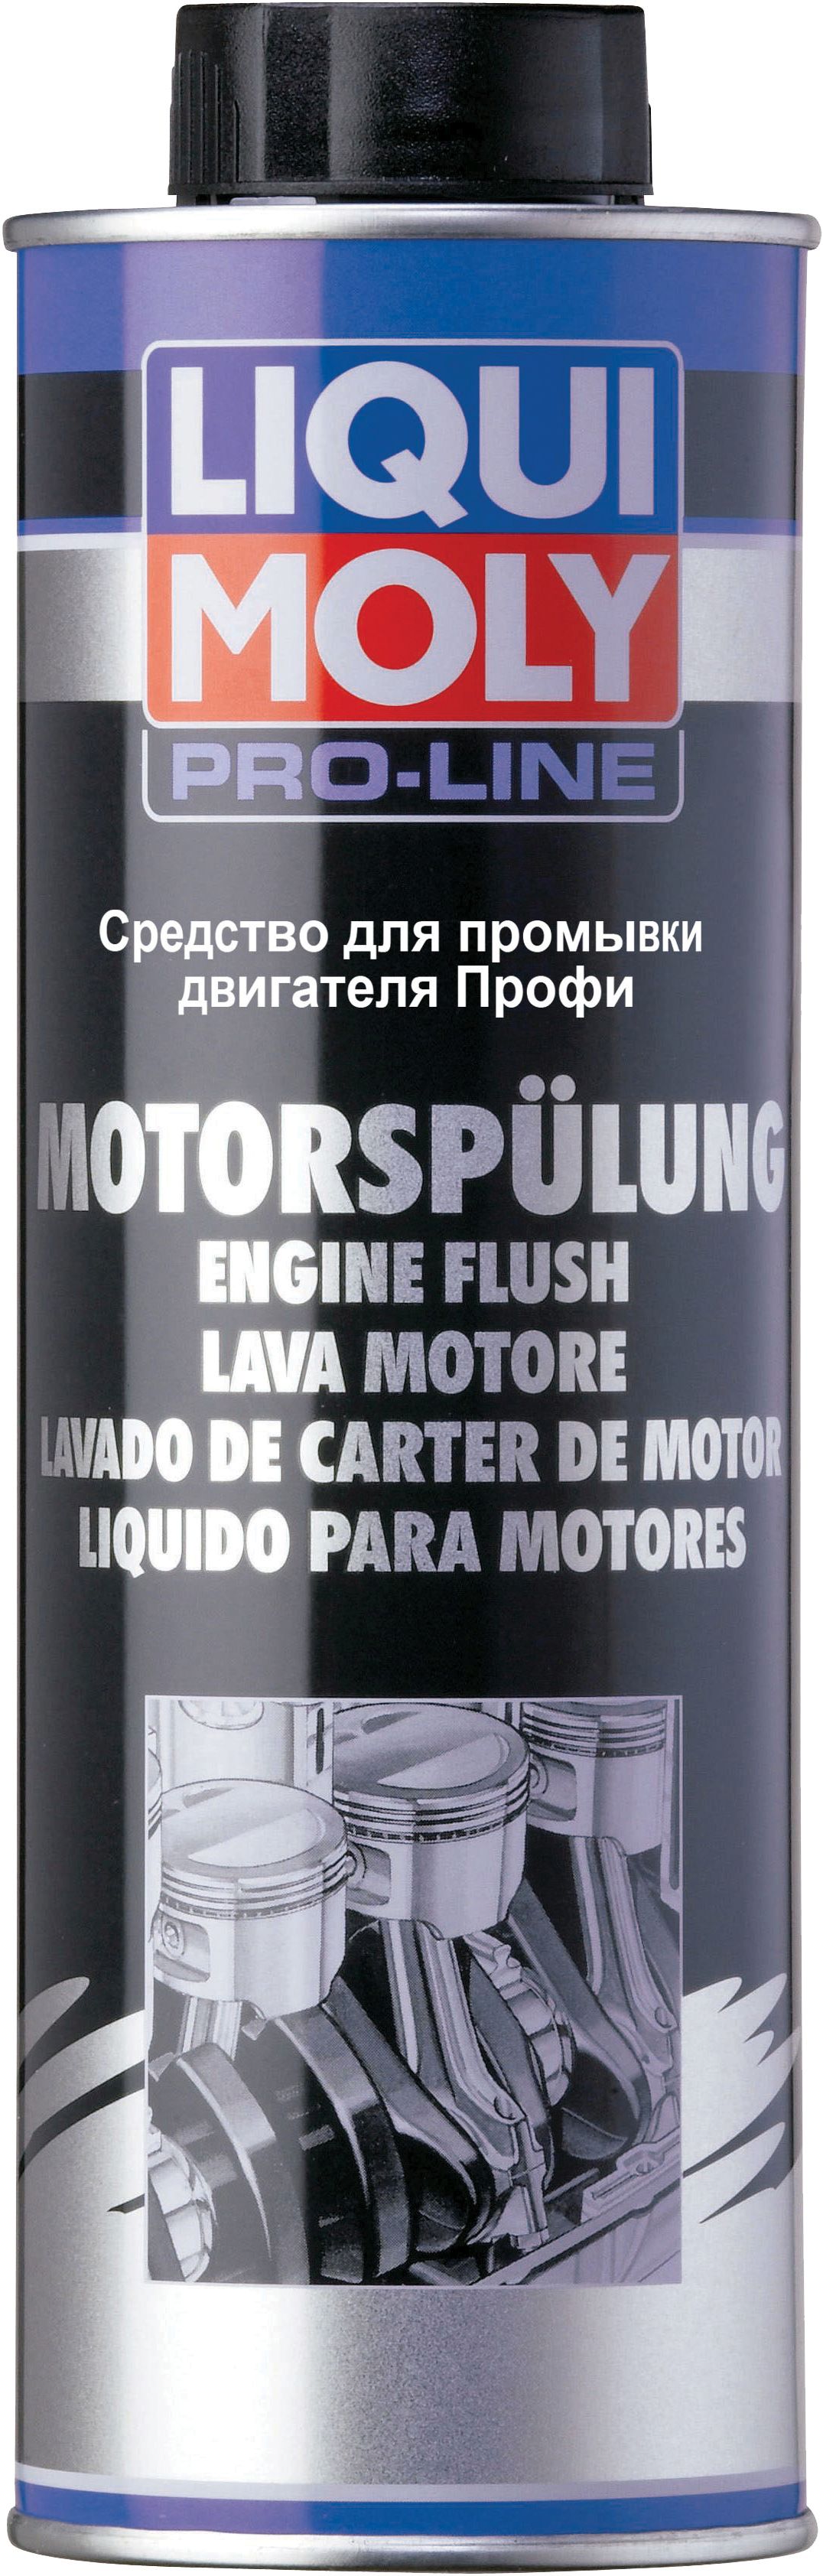 Промывка двигателя 10 минут LiquiMoly профи Pro-Line Motorspulung 500мл 7507 от магазина А-маркет